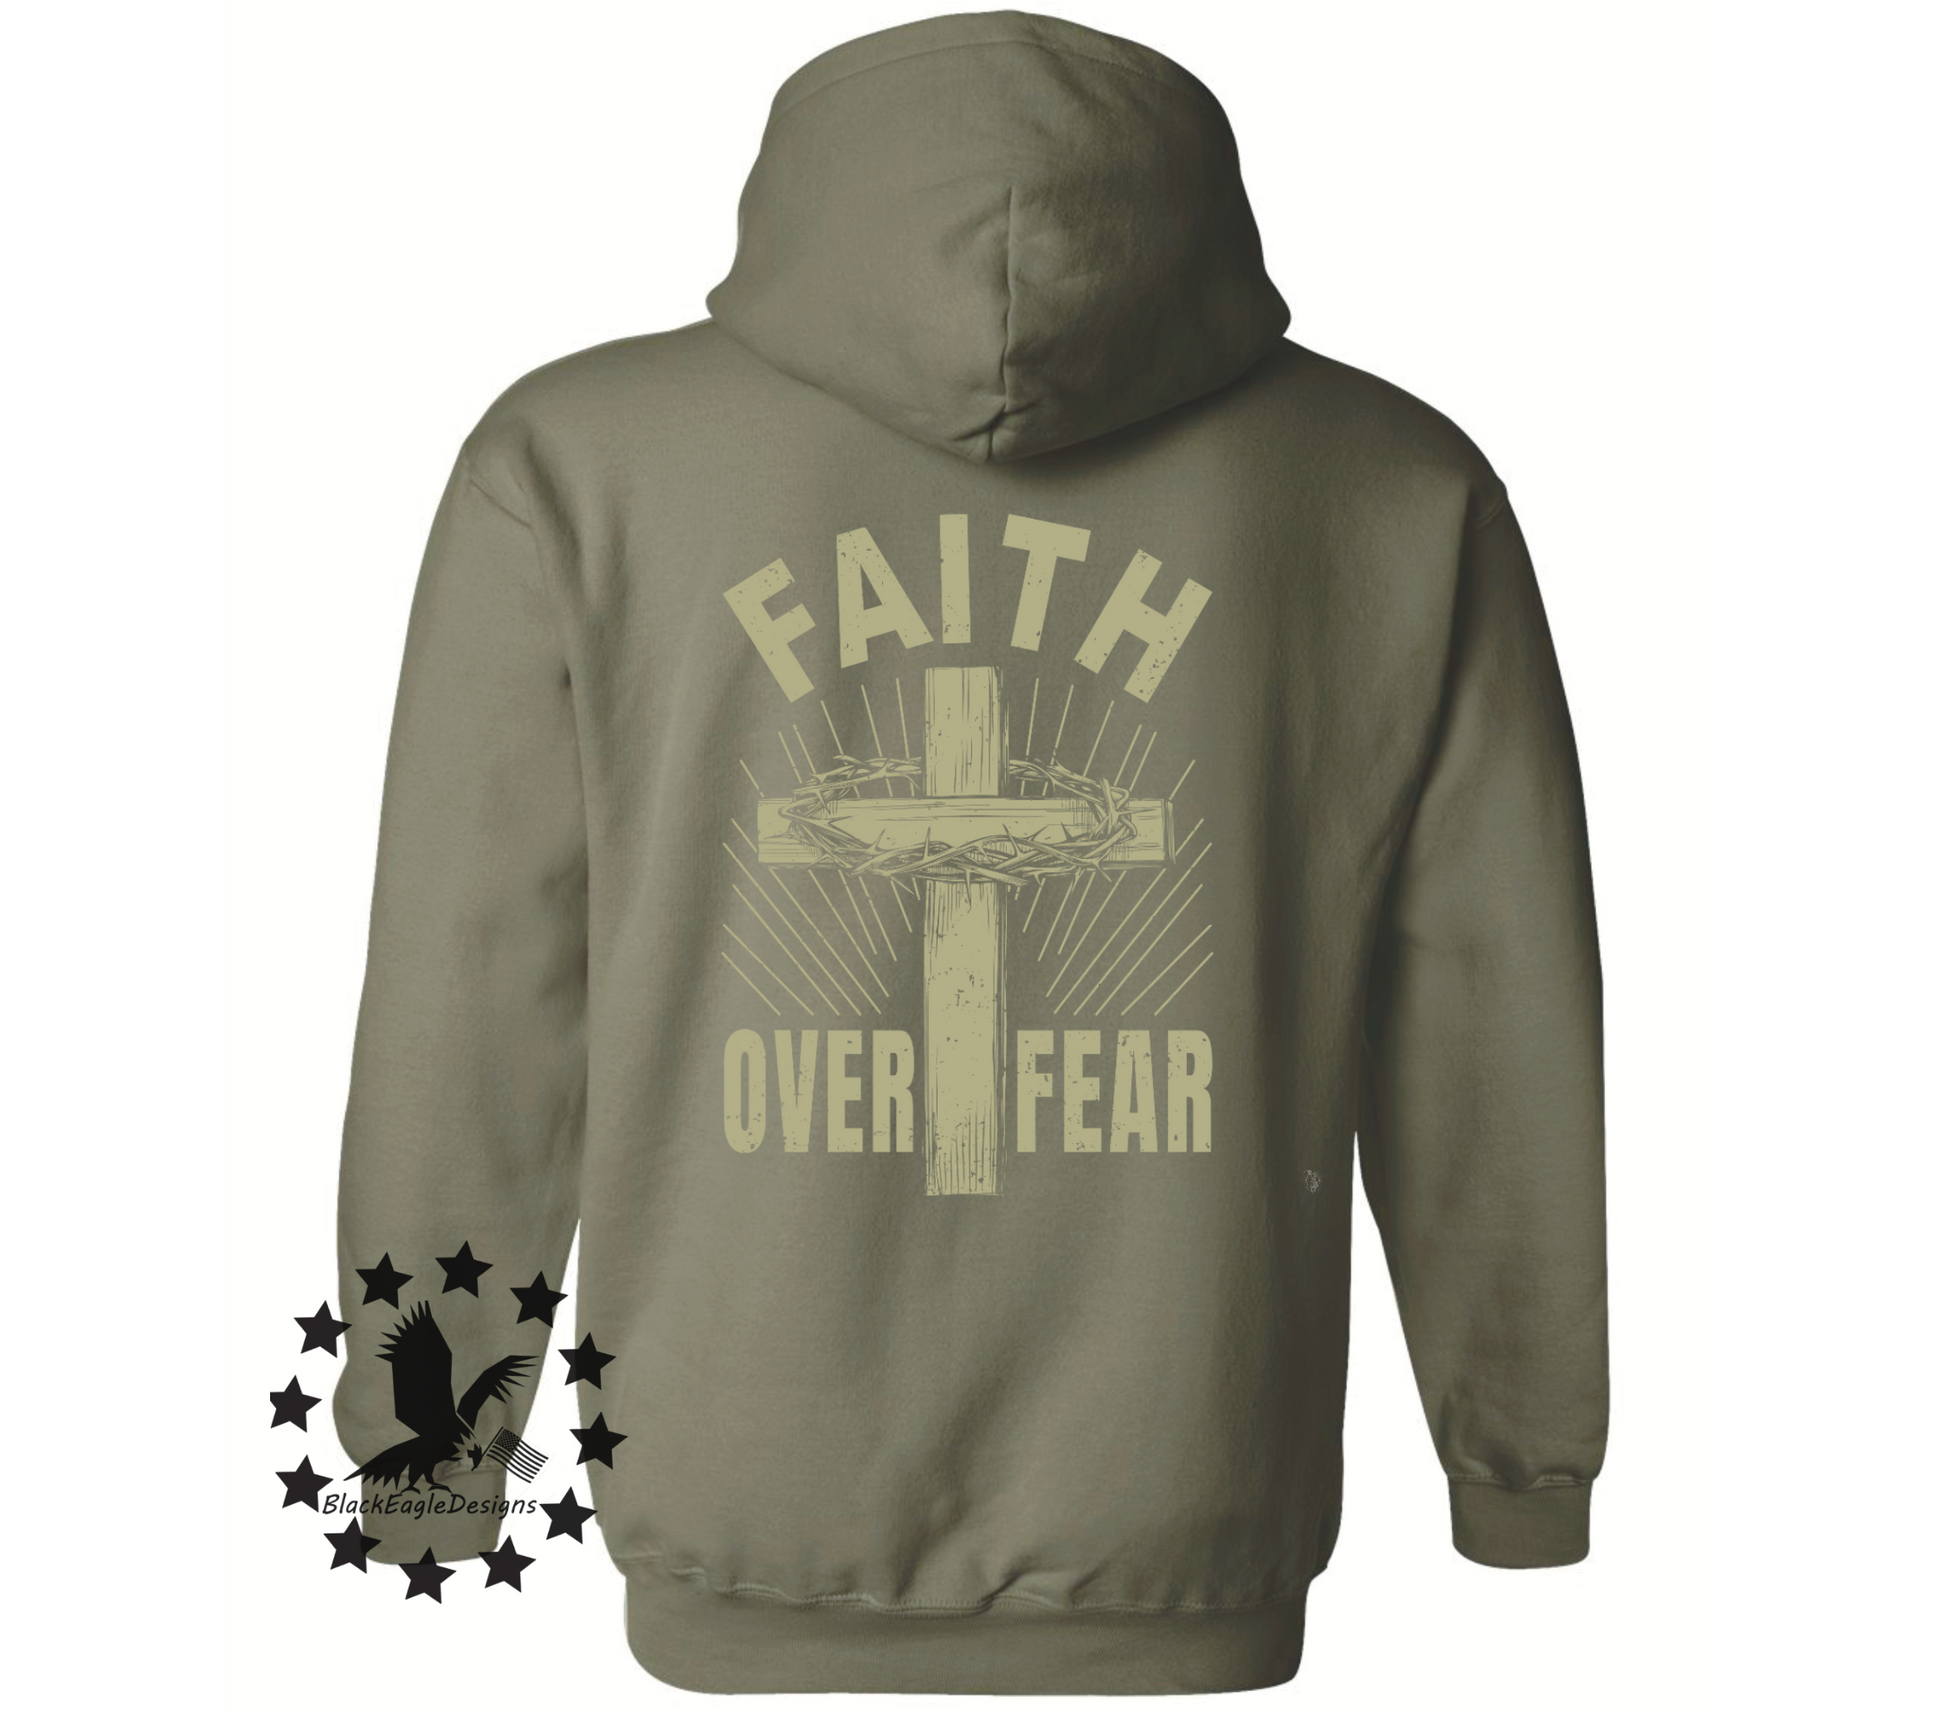 Faith Over Fear - Black Eagle Apparel